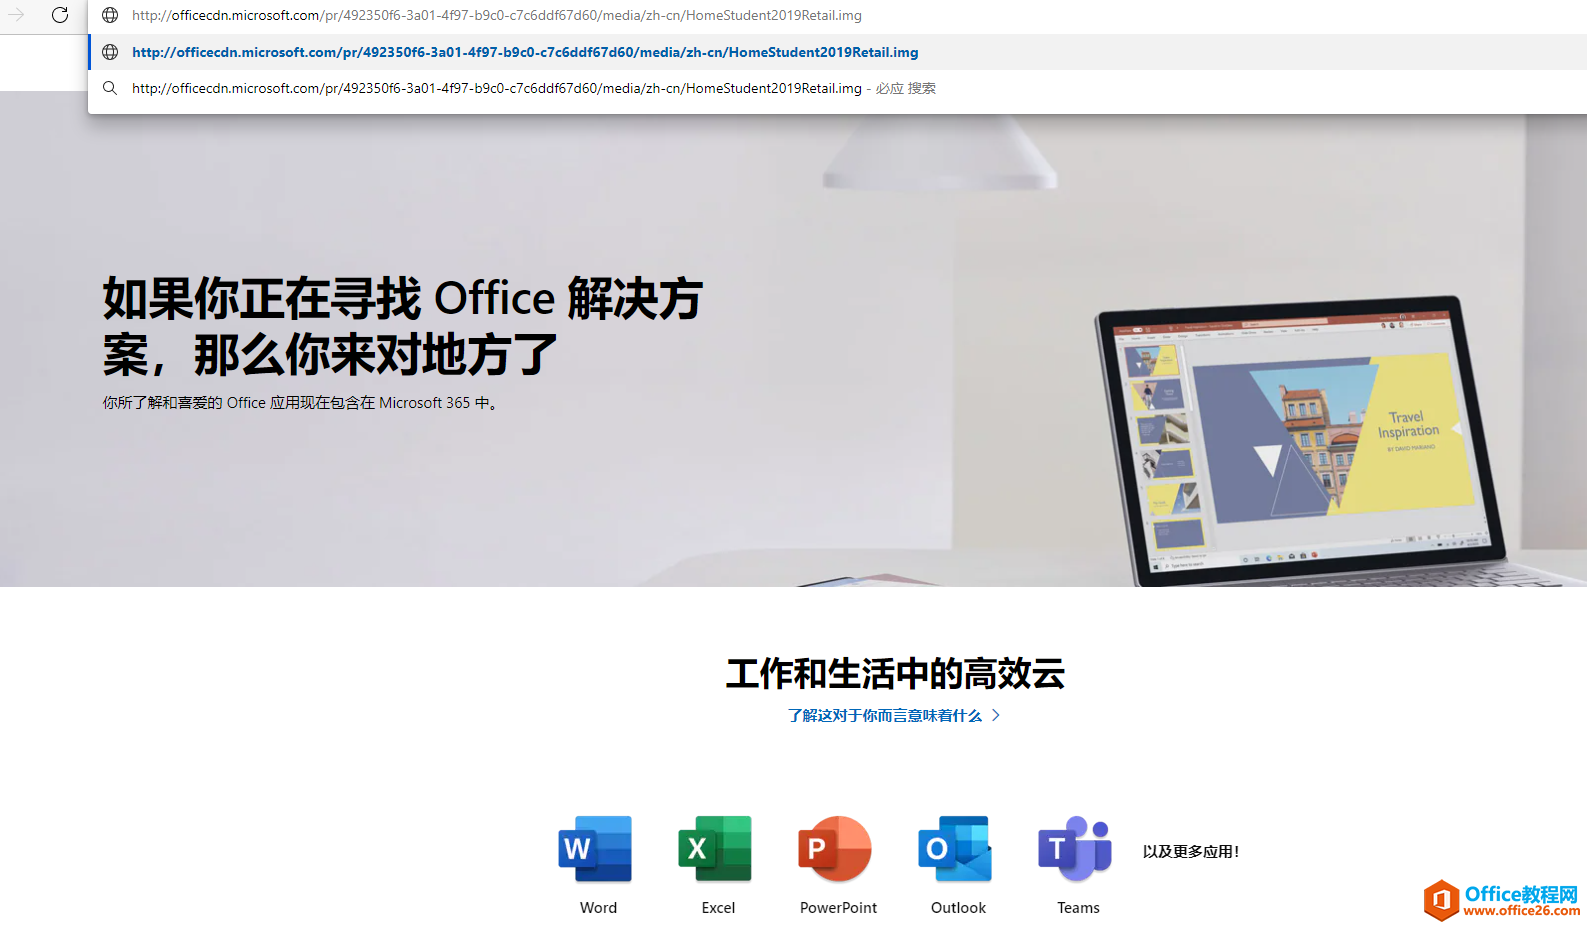 微软Office官方下载地址，附安装激活方法，正版办公软件